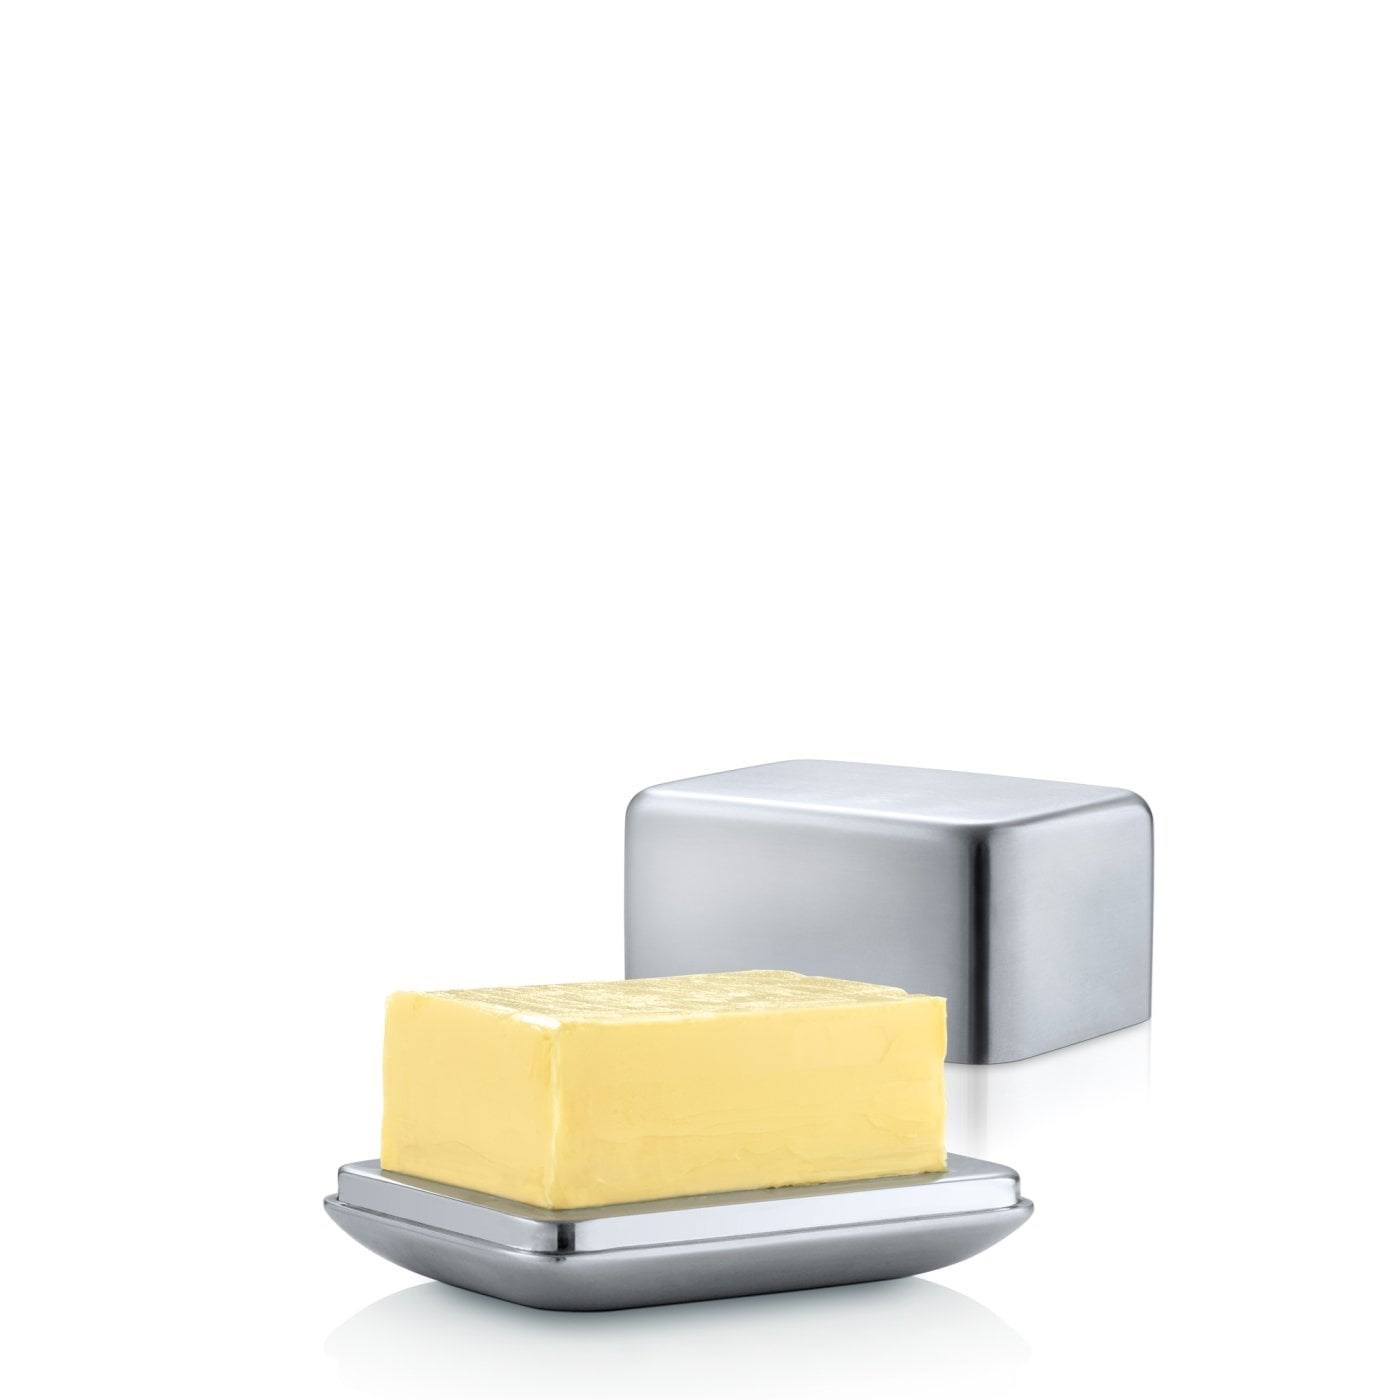 Obrázok z Dóza na maslo malá 125g BASIC